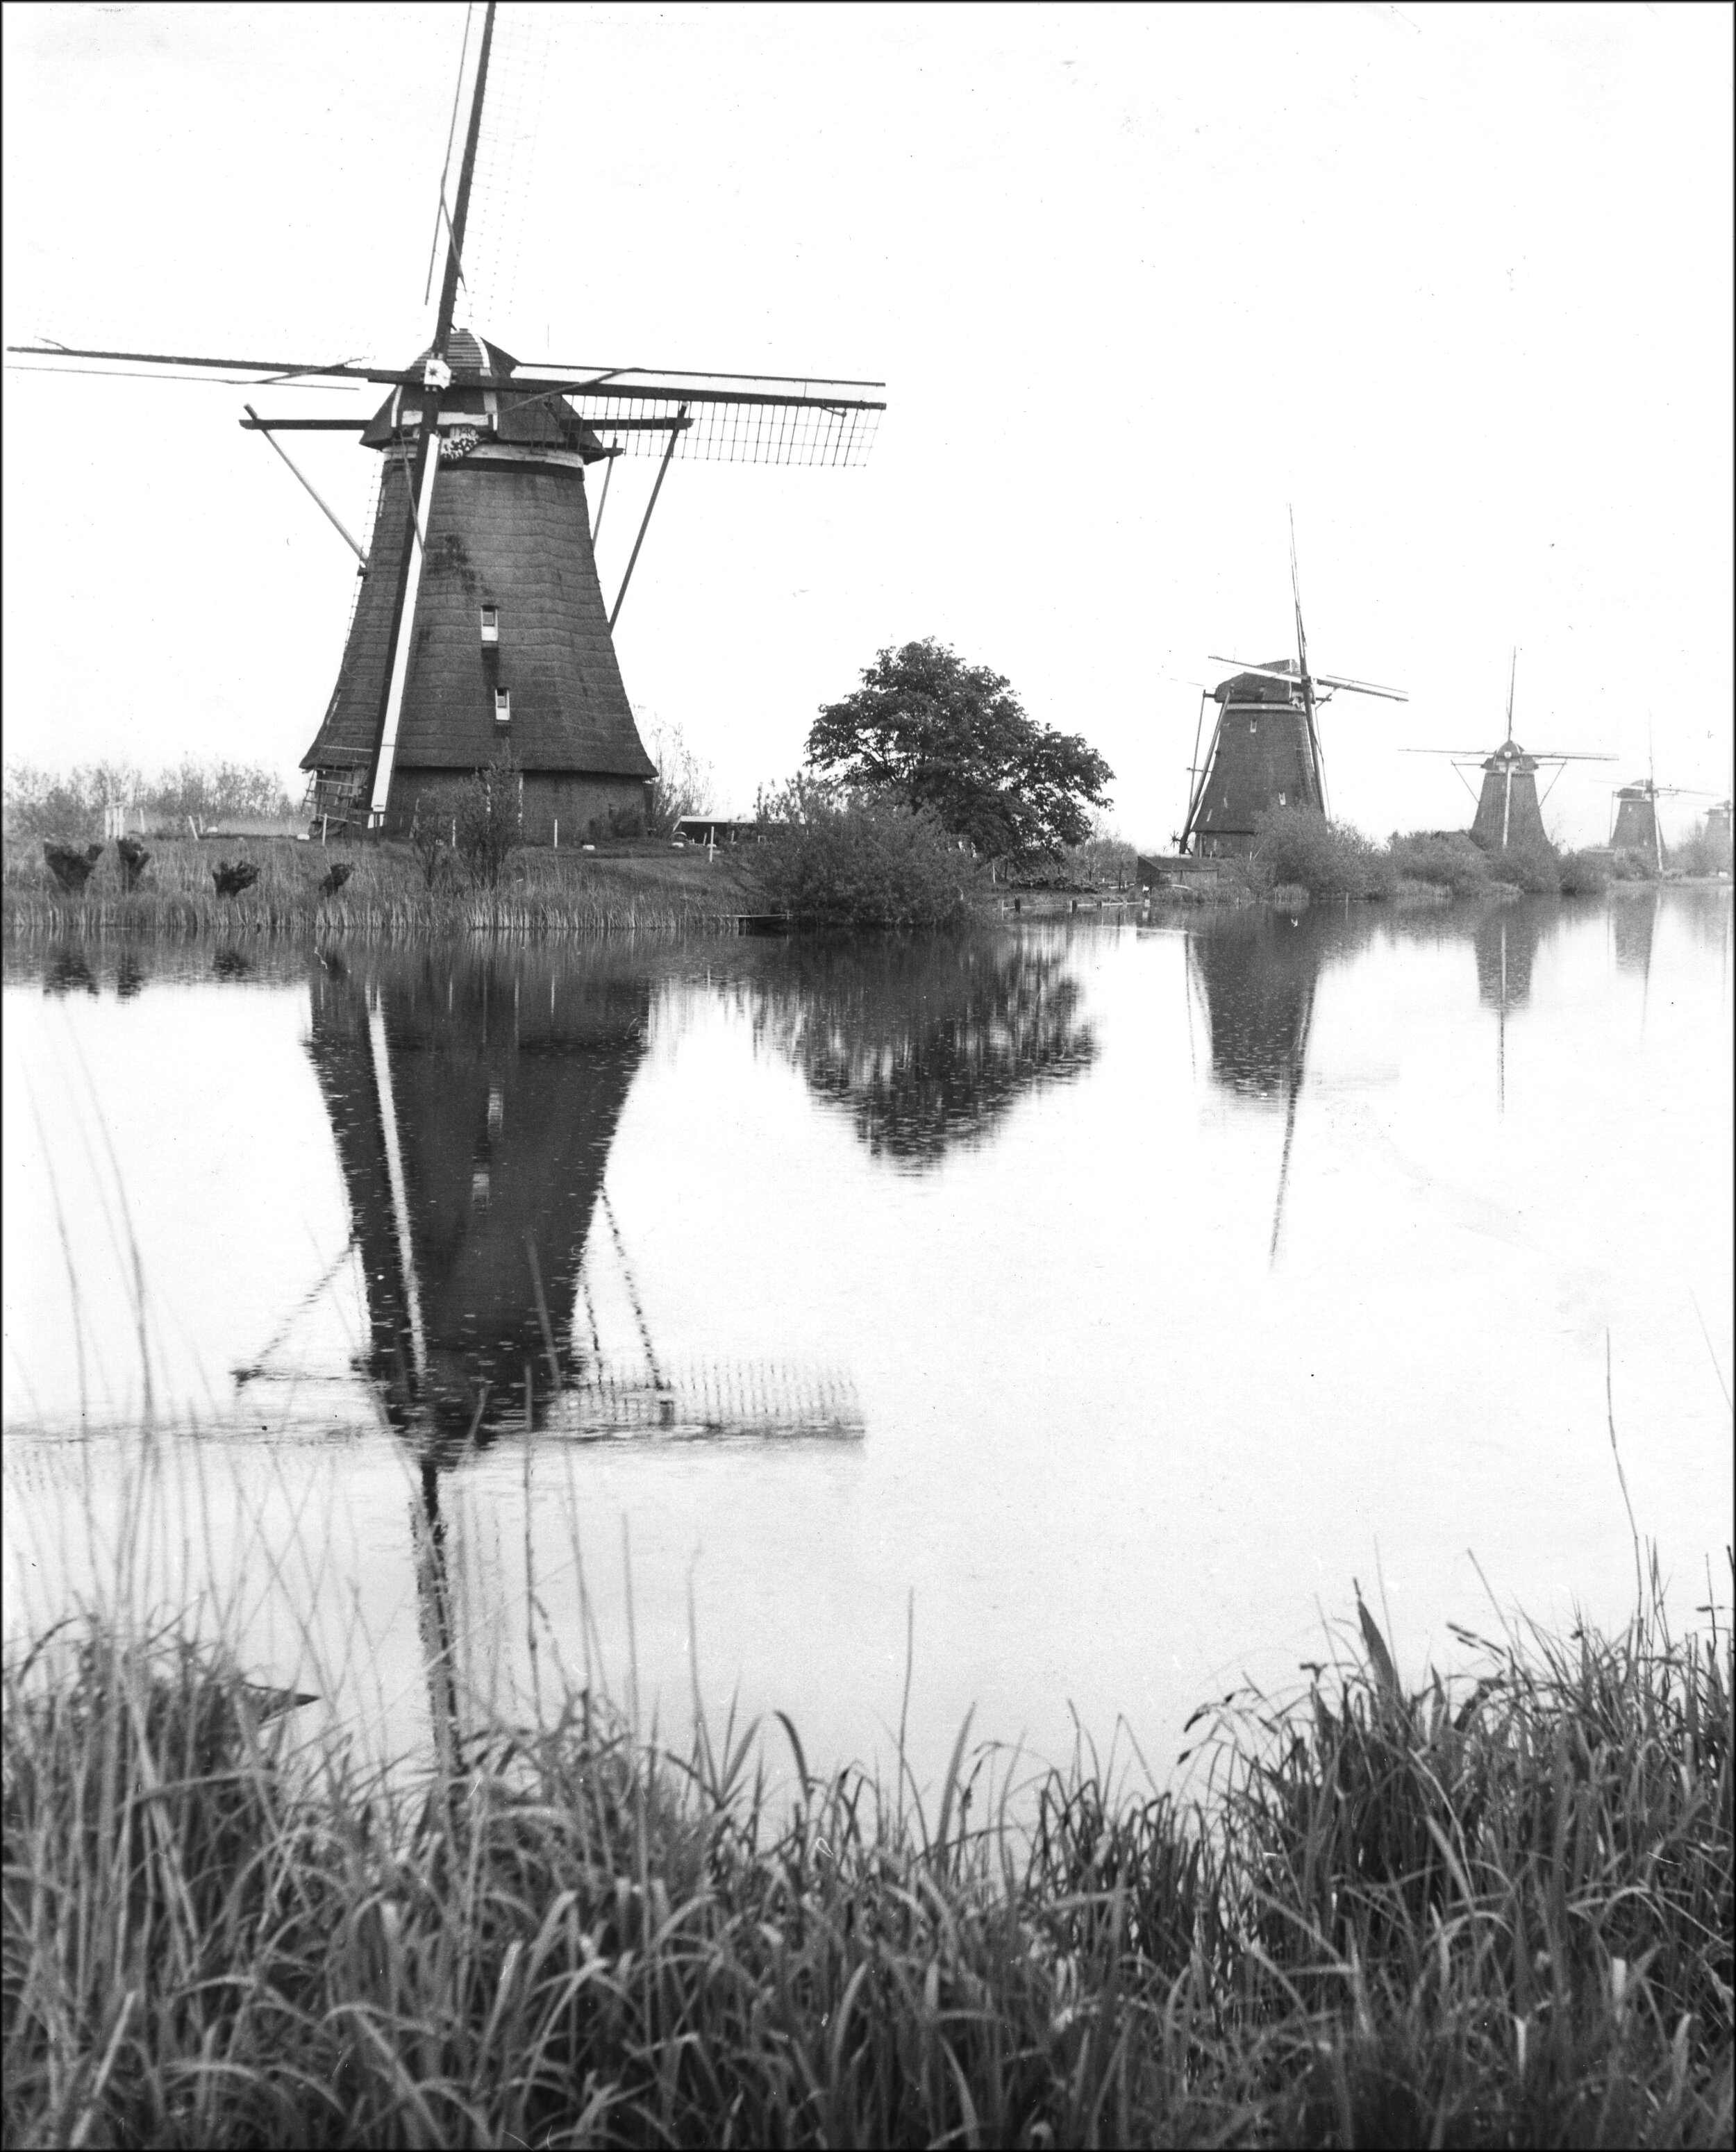 Windmills, Rotterdam, 1972